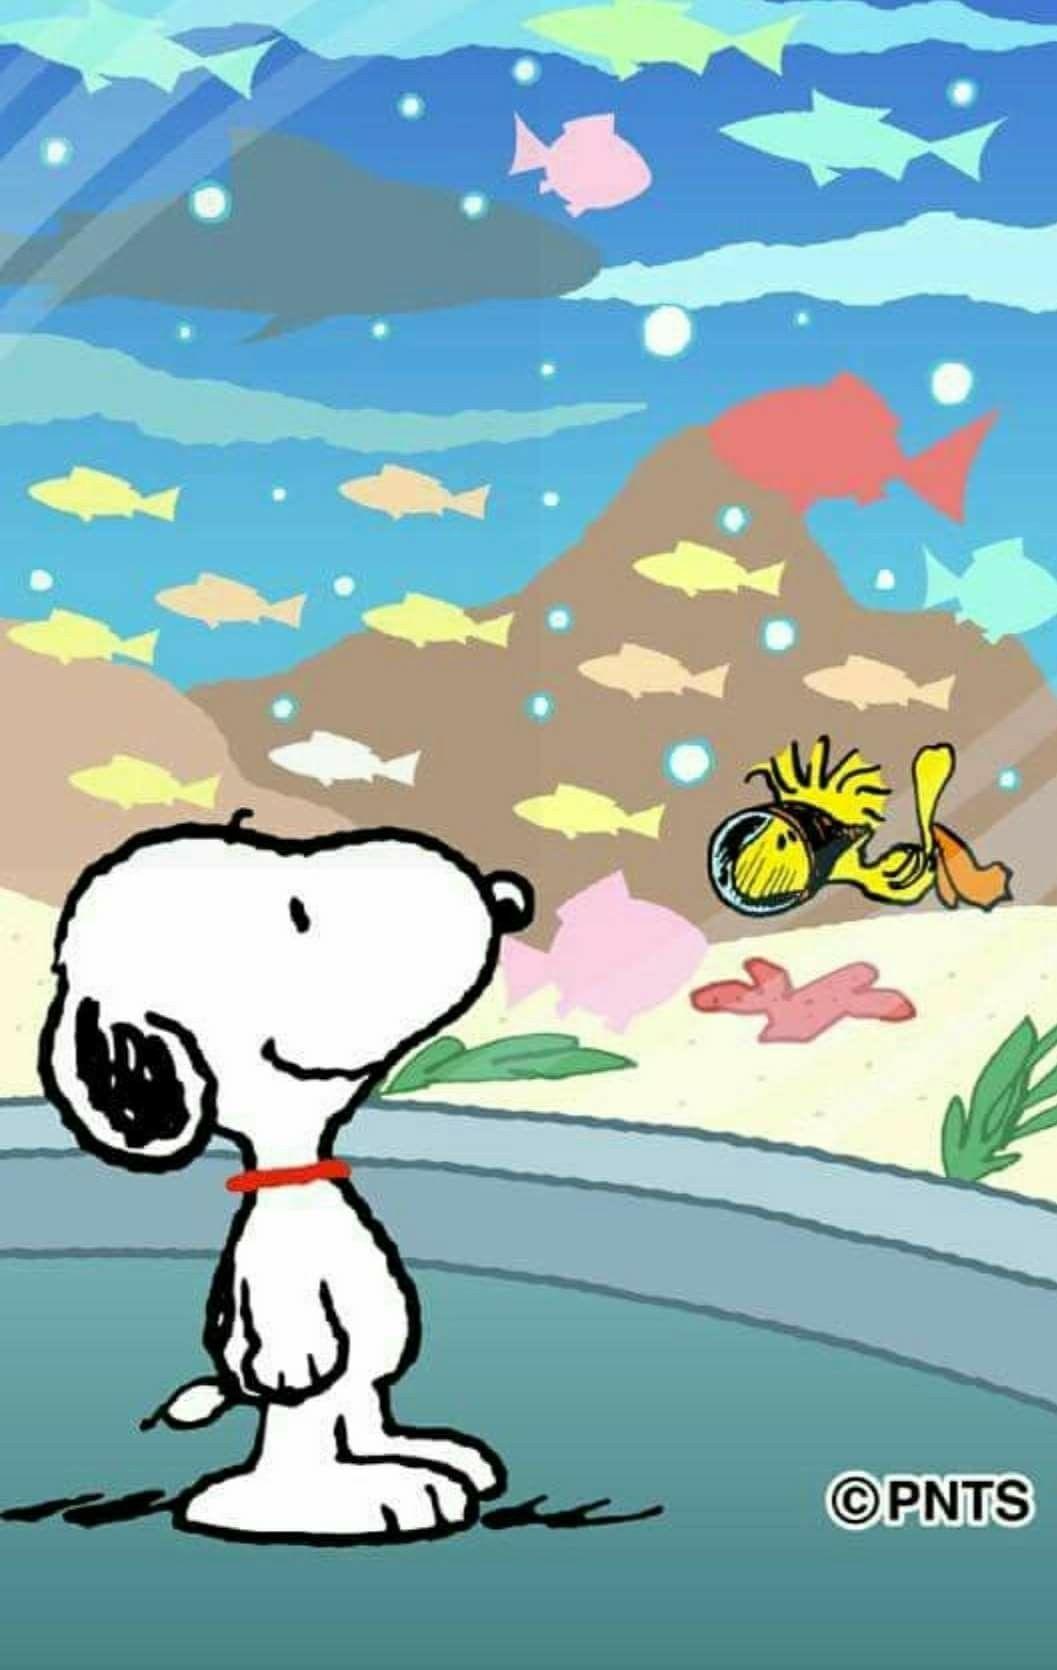 Snoopy. Charlie Brown Peanuts. Snoopy, Charlie Brown